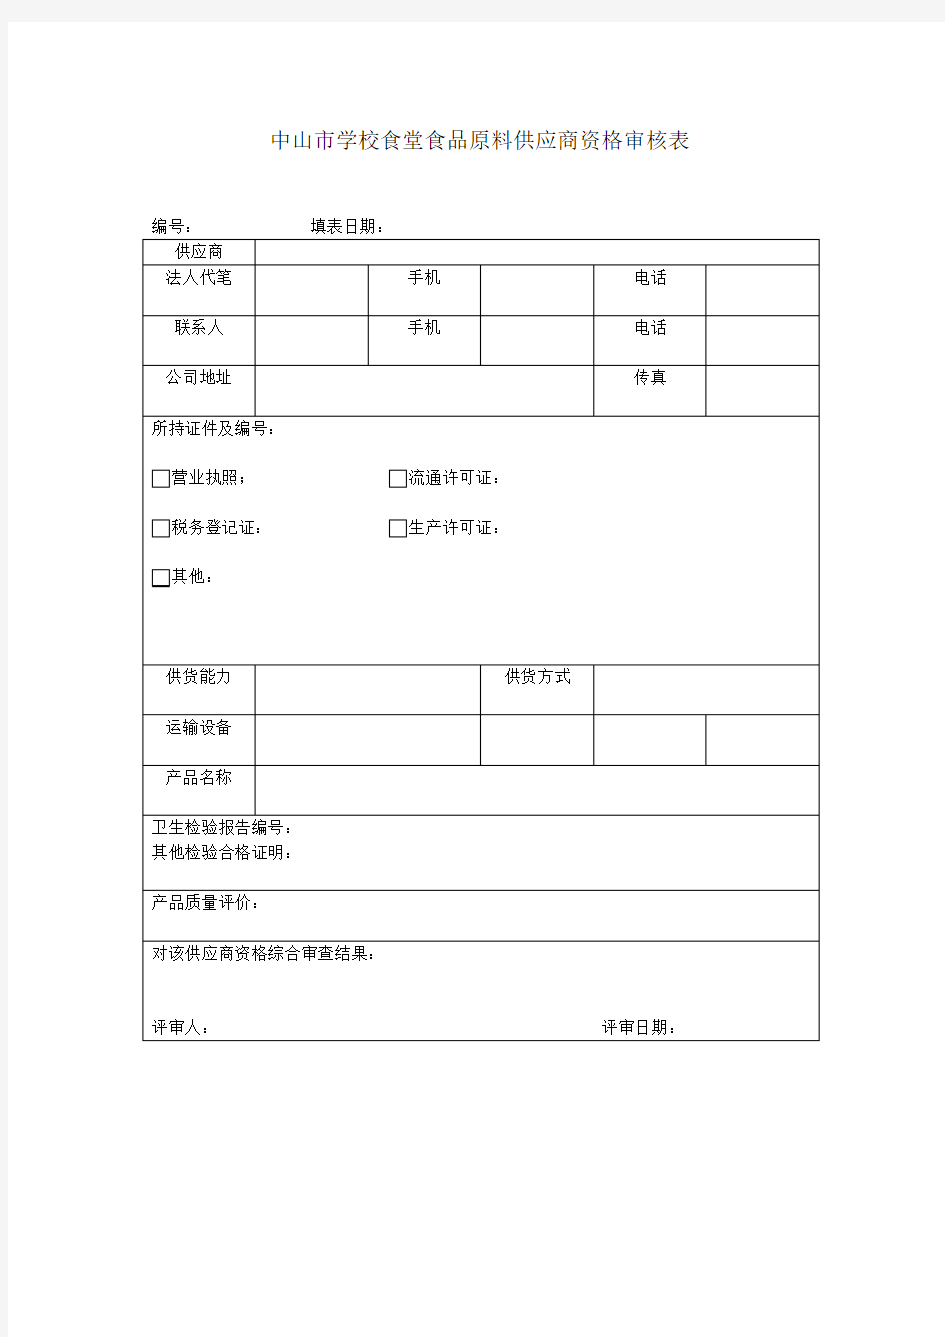 中山市学校食堂食品原料供应商资格审核表